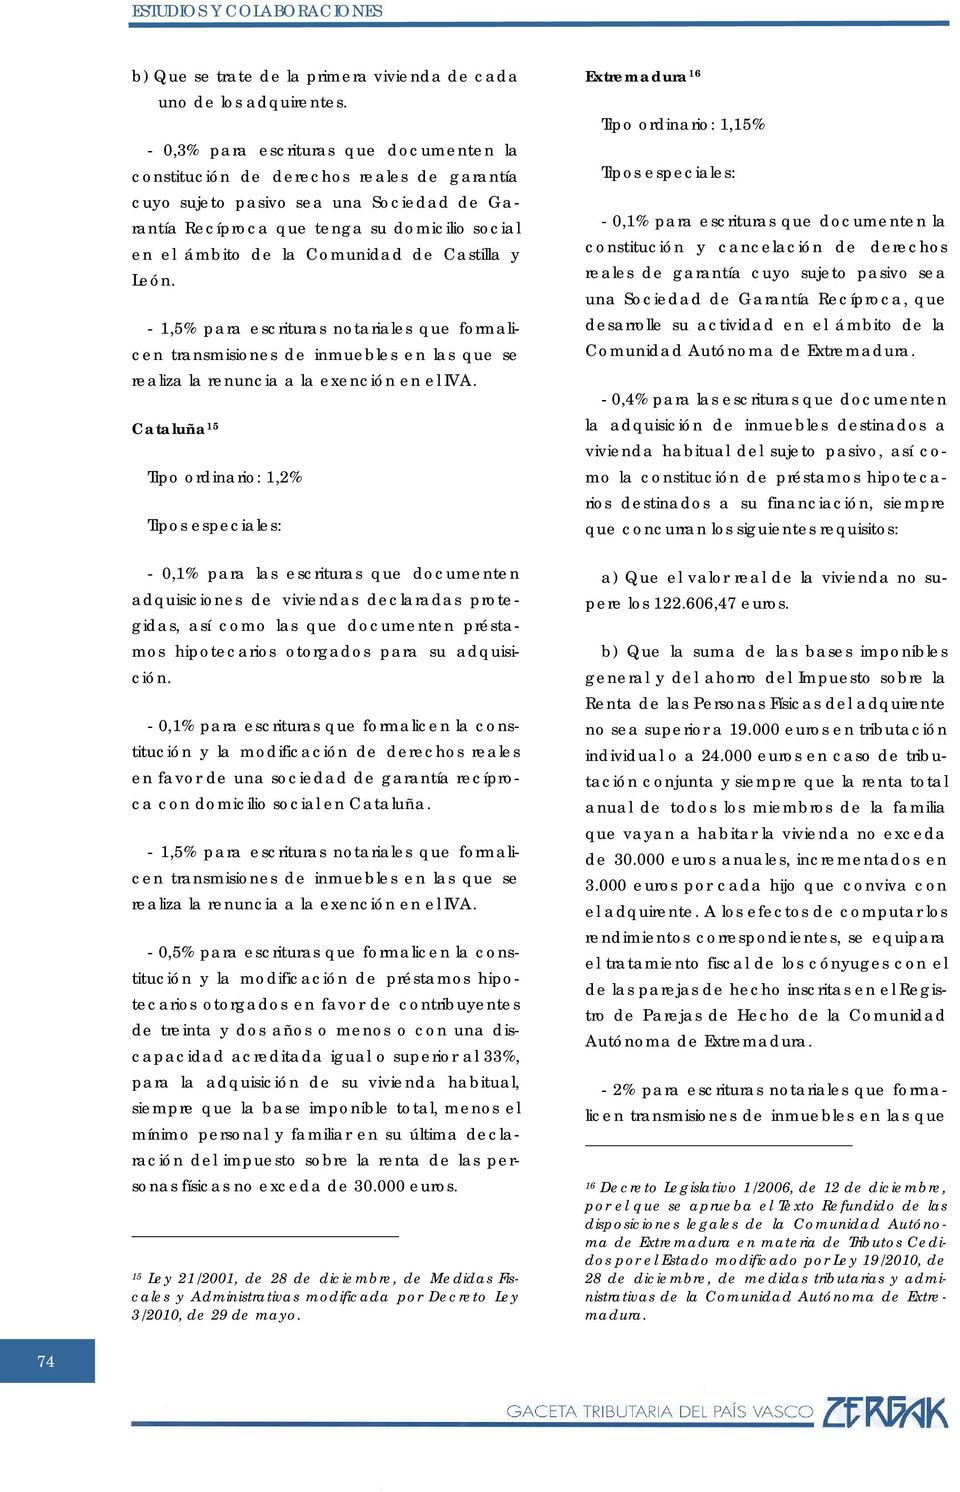 Comunidad de Castilla y León. - 1,5% para escrituras notariales que formalicen transmisiones de inmuebles en las que se realiza la renuncia a la exención en el IVA.